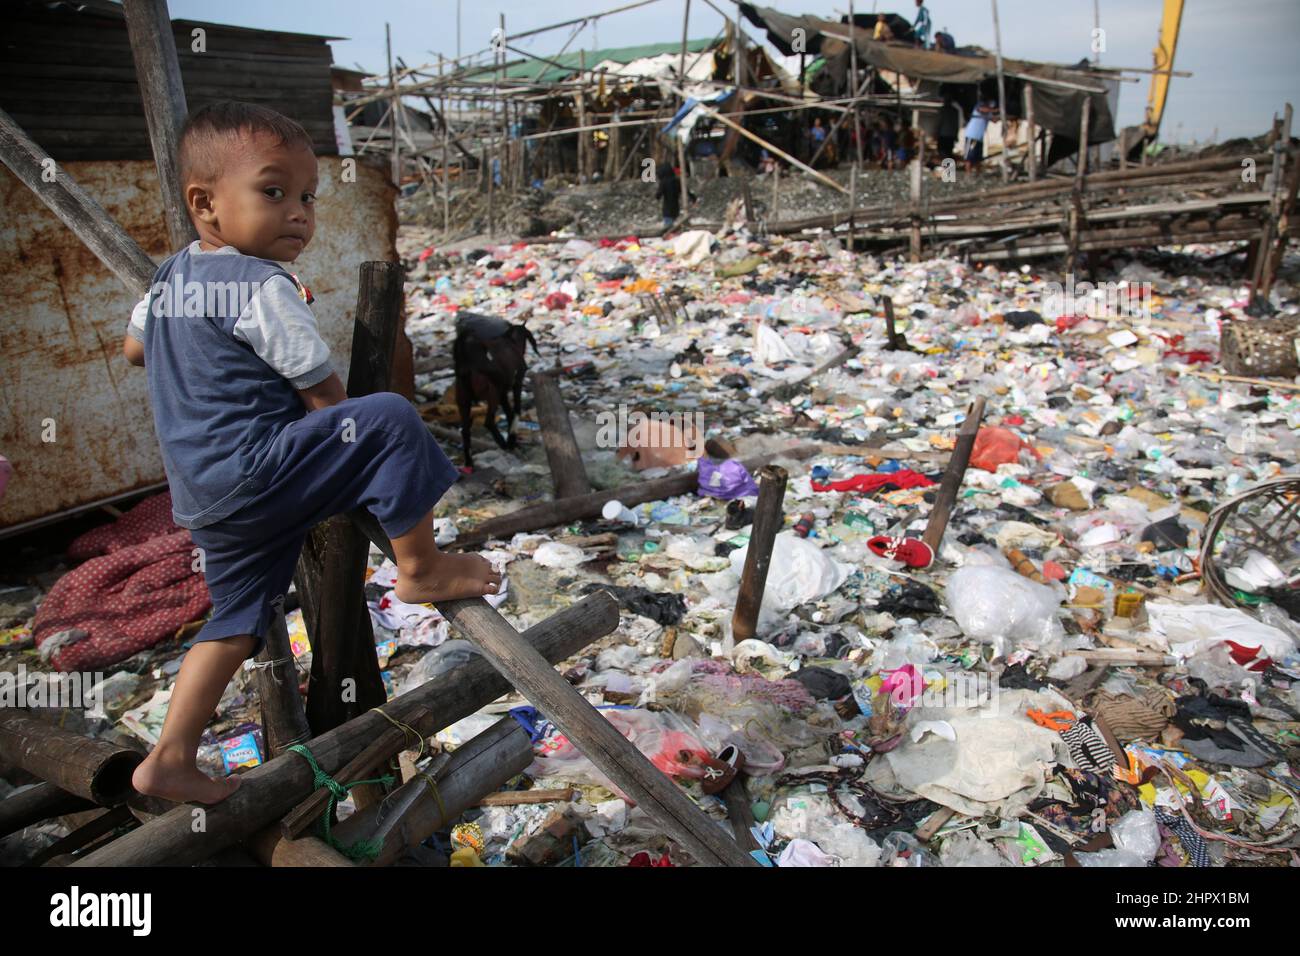 23 de febrero de 2022, Yakarta, Región Especial de la Capital de Yakarta, Indonesia: Cientos de casas ubicadas en zonas densamente pobladas en la zona de Kalibaru, Cilincing, Yakarta del Norte, Indonesia, están rodeadas de montones de basura. La pila de basura está dominada por los residuos domésticos, la mayoría de los cuales son residuos plásticos, que cubren la superficie del agua de mar y parecen un mar de basura y contaminan el medio ambiente en la zona. Esto se ve exacerbado por el número de residentes que todavía tiran basura alrededor del lugar. (Imagen de crédito: © Kuncoro Widyo Rumpoko/Pacific Press via ZUMA Press Wire) Foto de stock